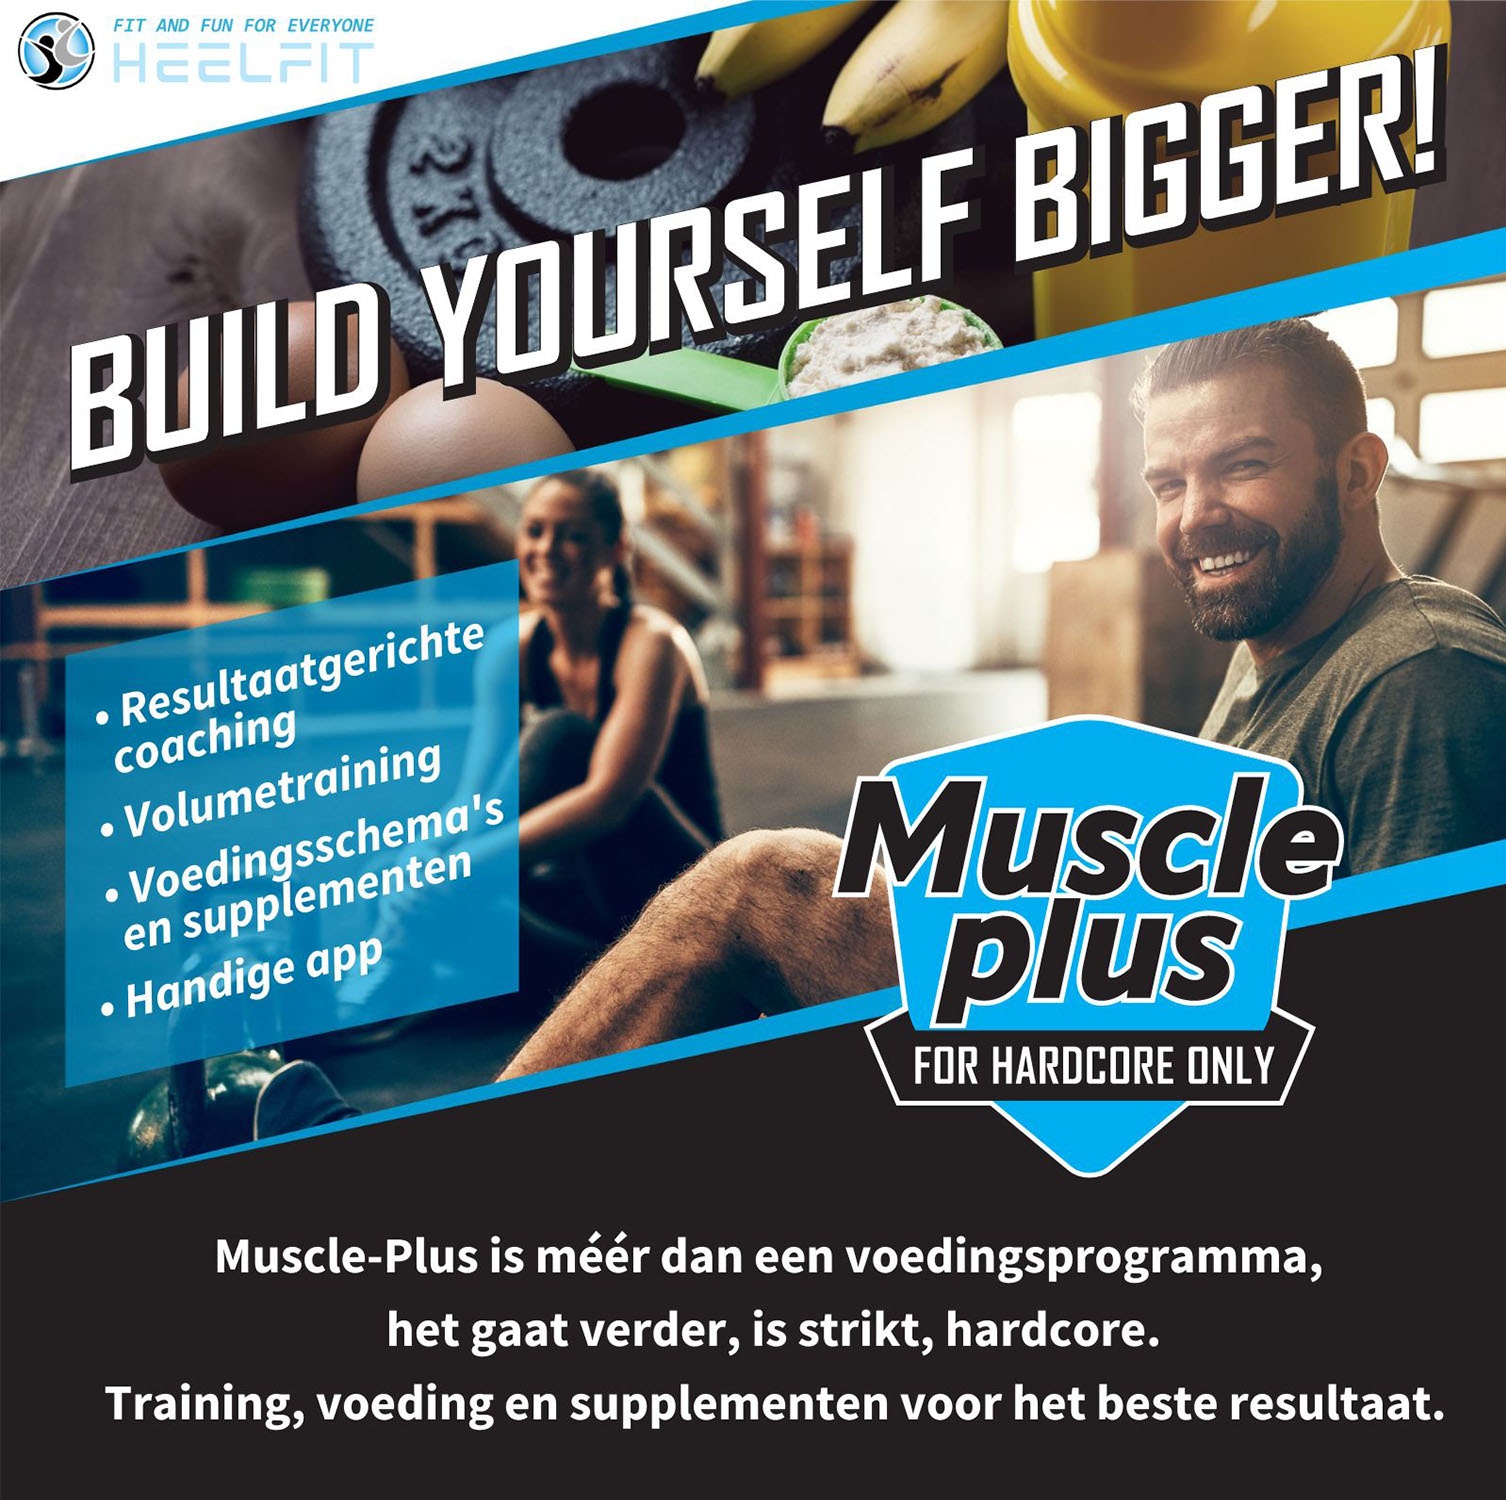 Build yourself bigger bij HeelFit!